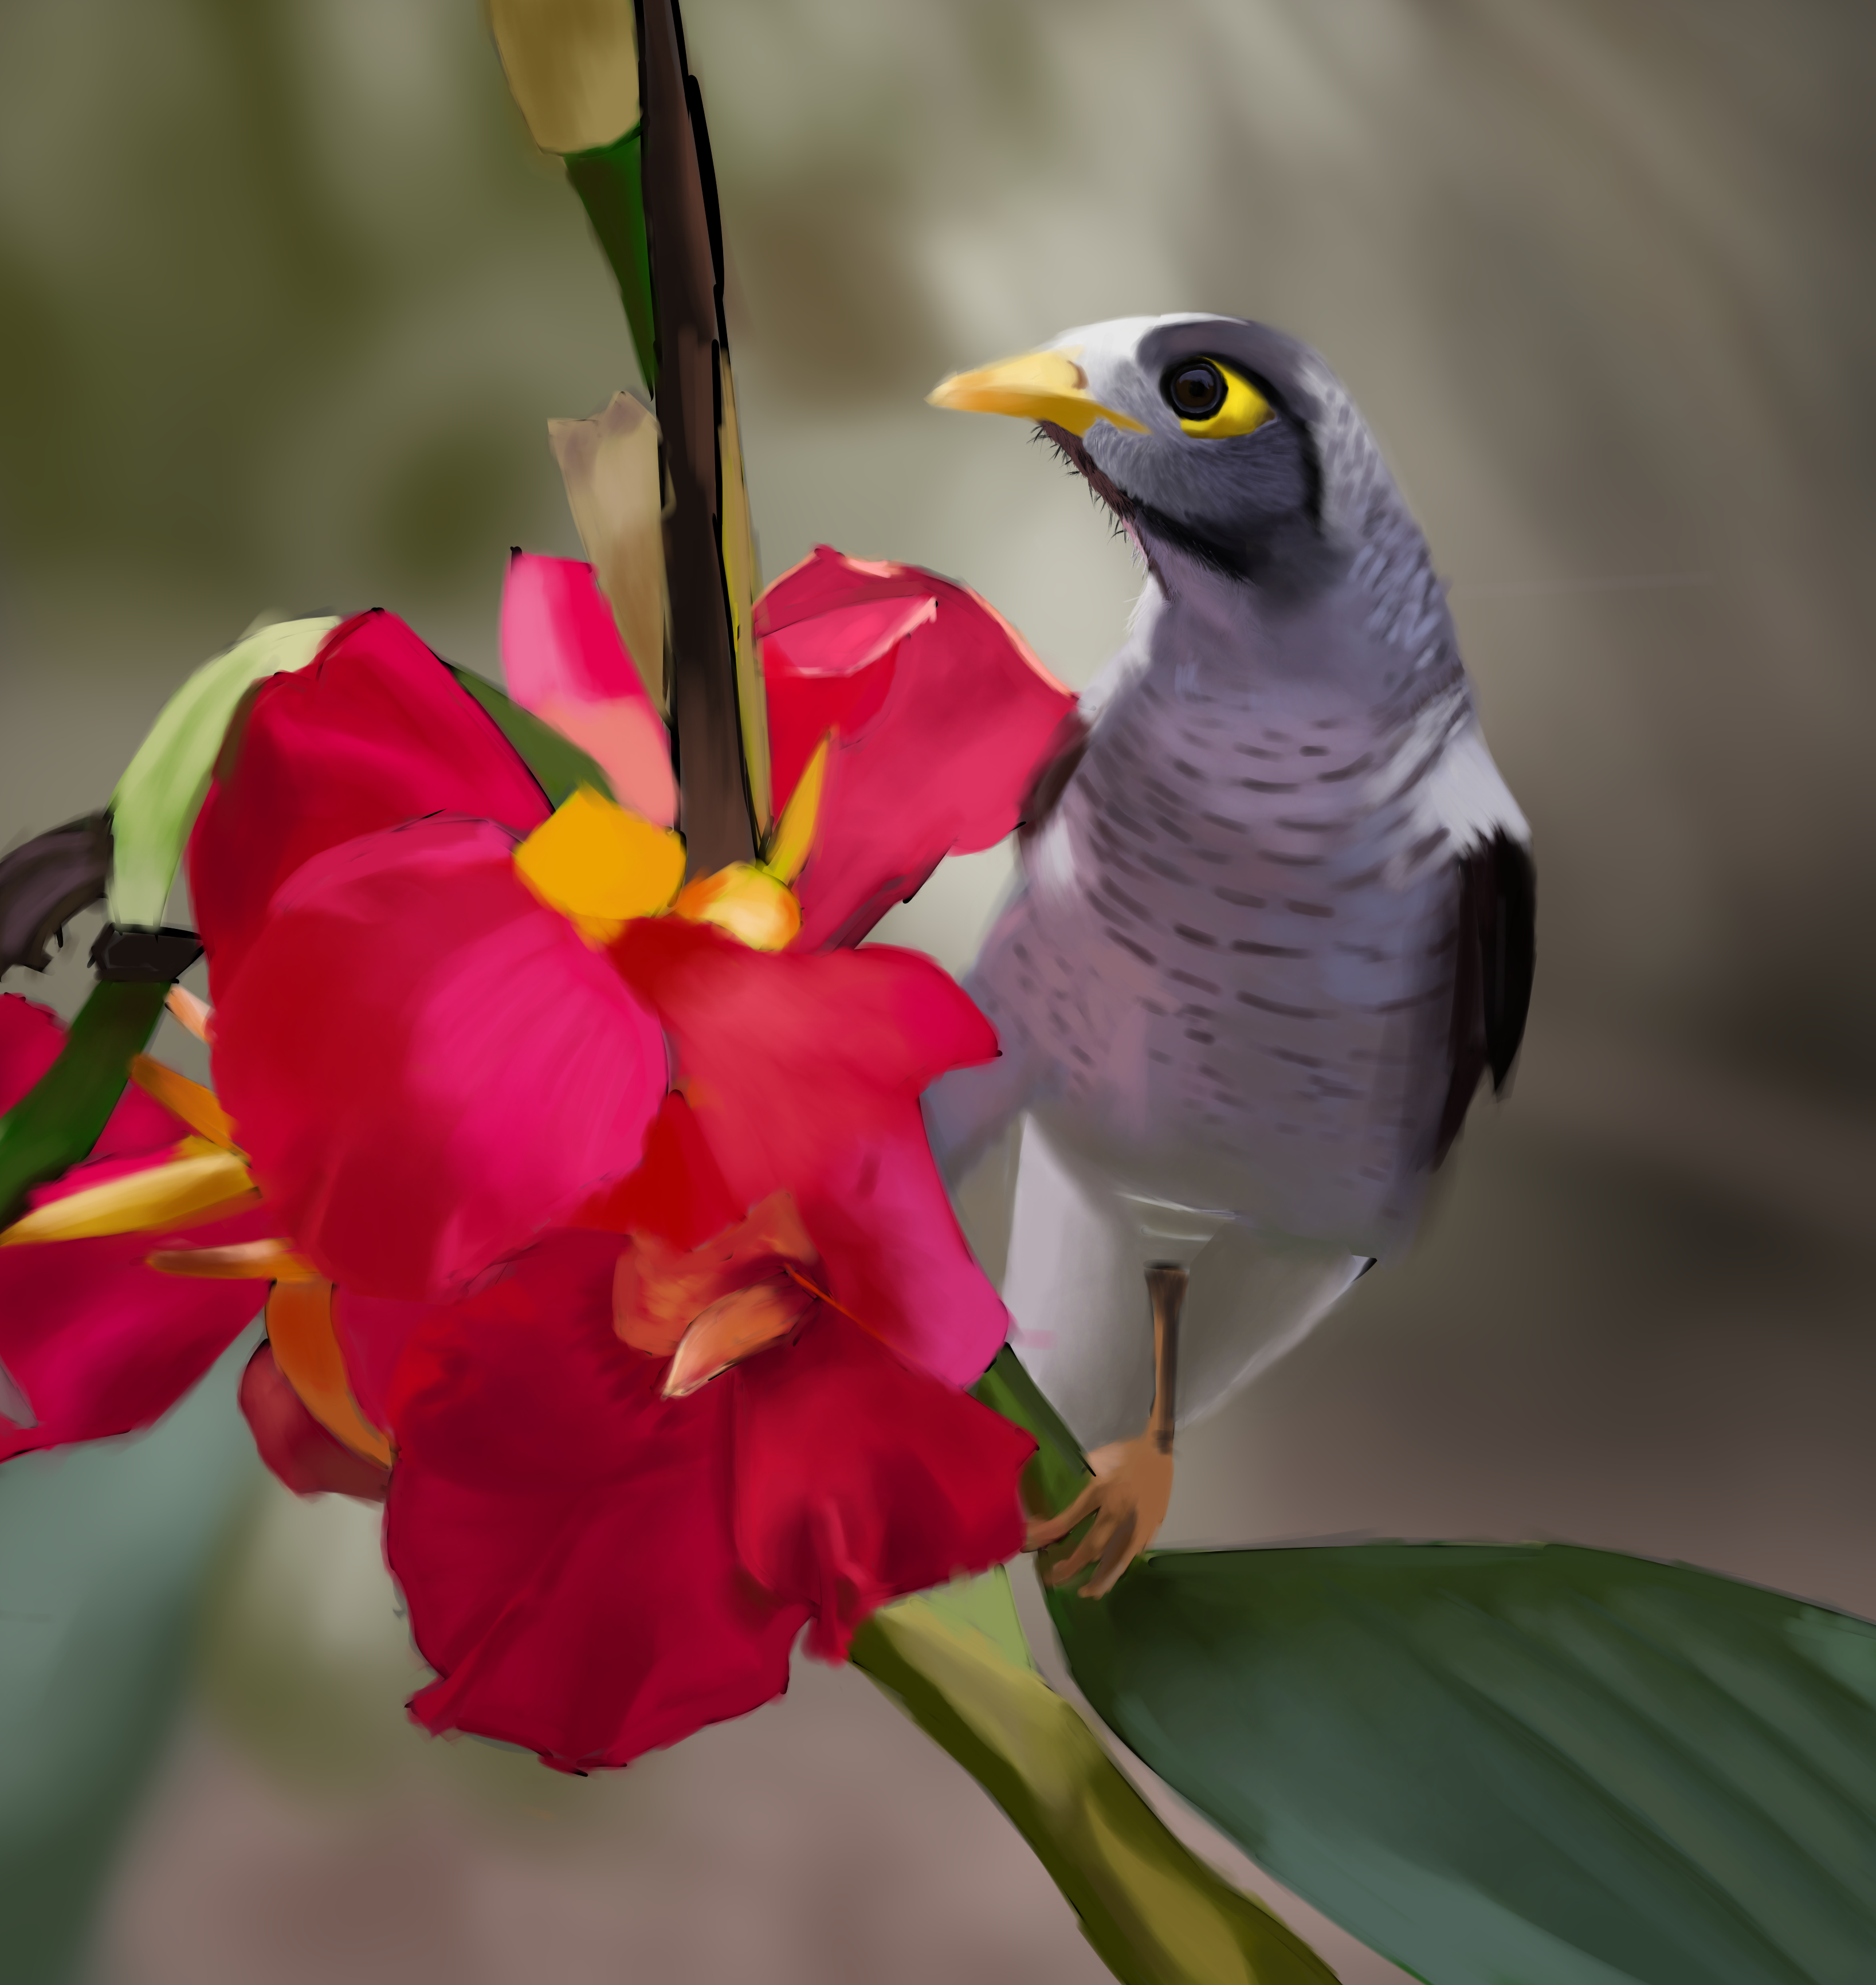 Bird and flower par gunt